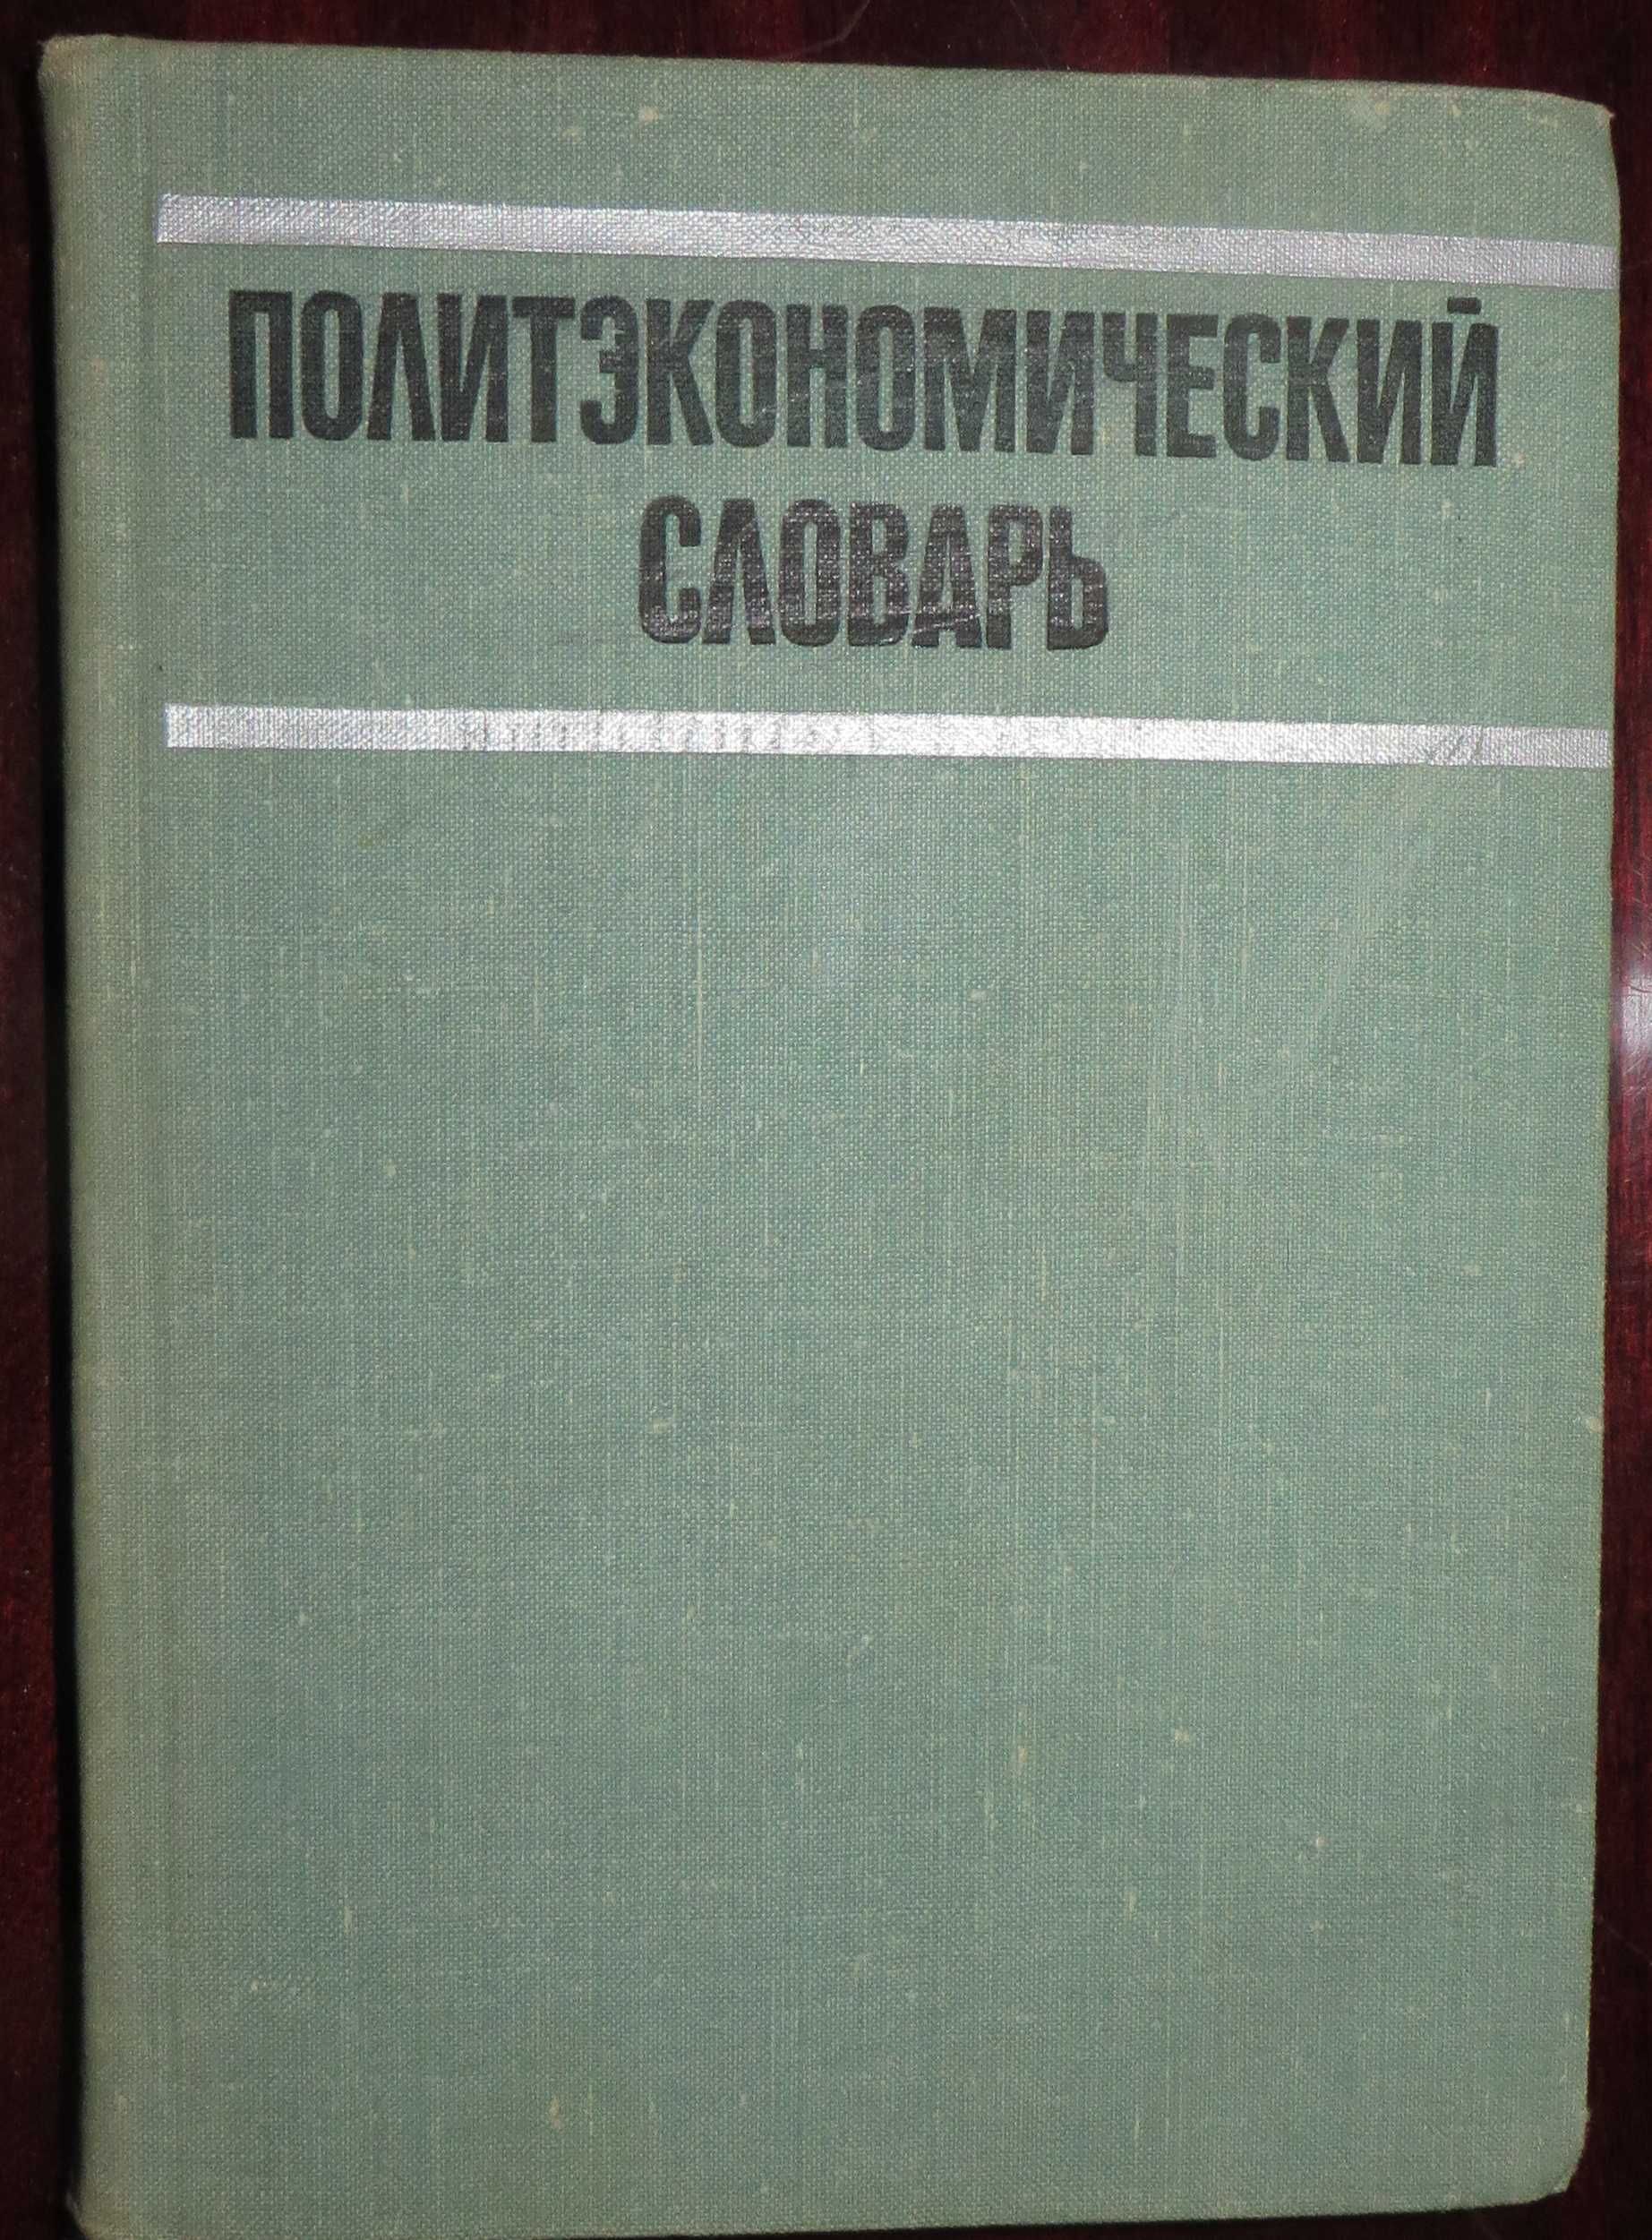 книга под ред Борисова Политэкономический словарь Москва 1972 г